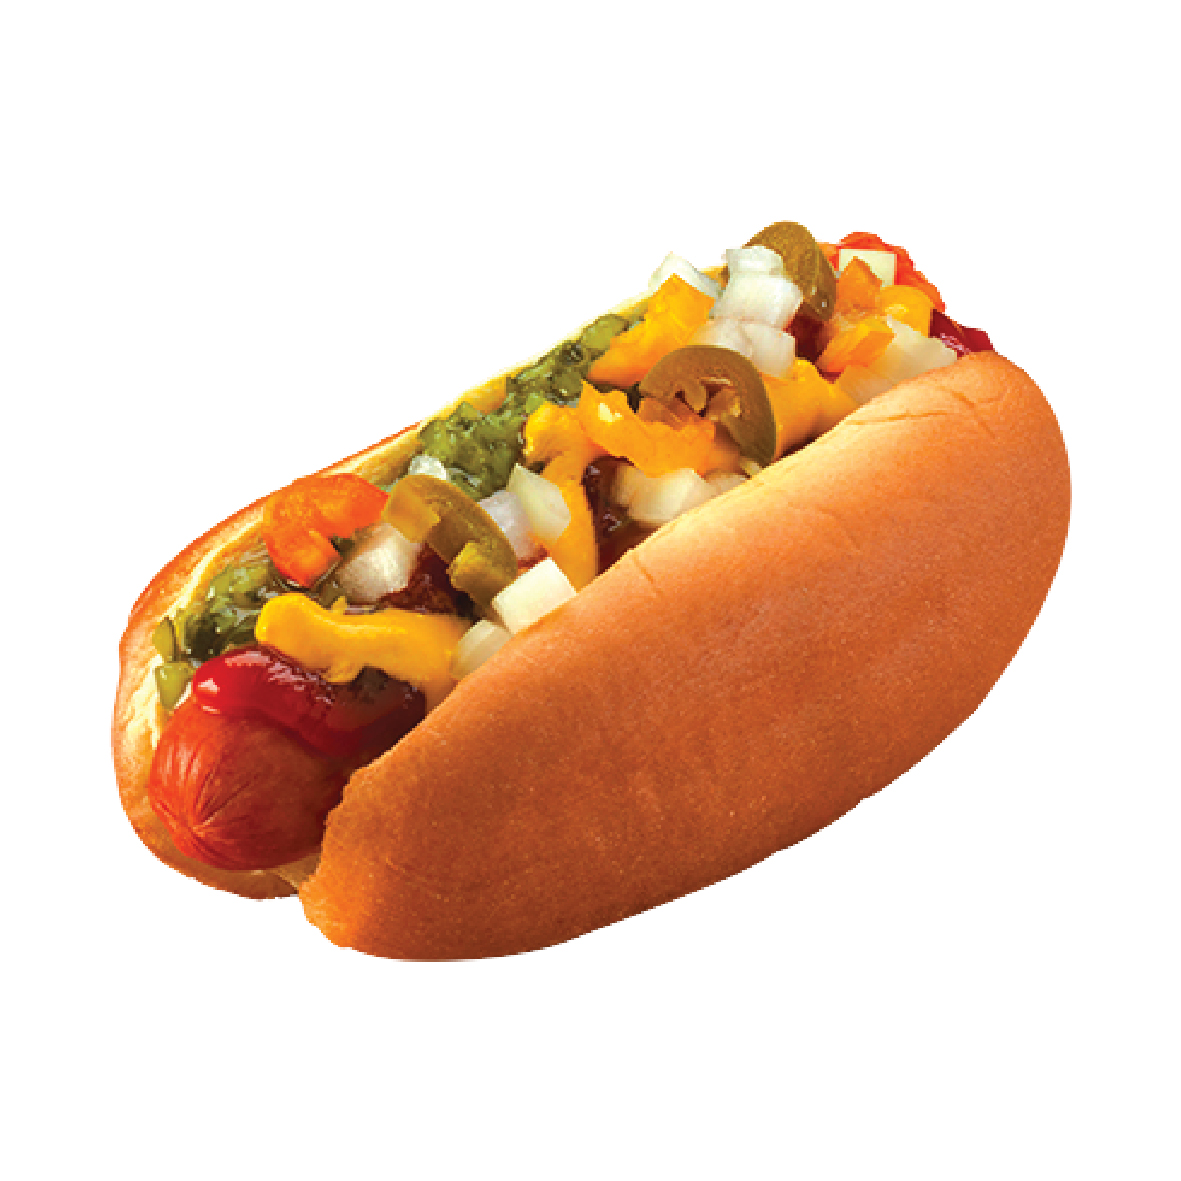  Hot dog 